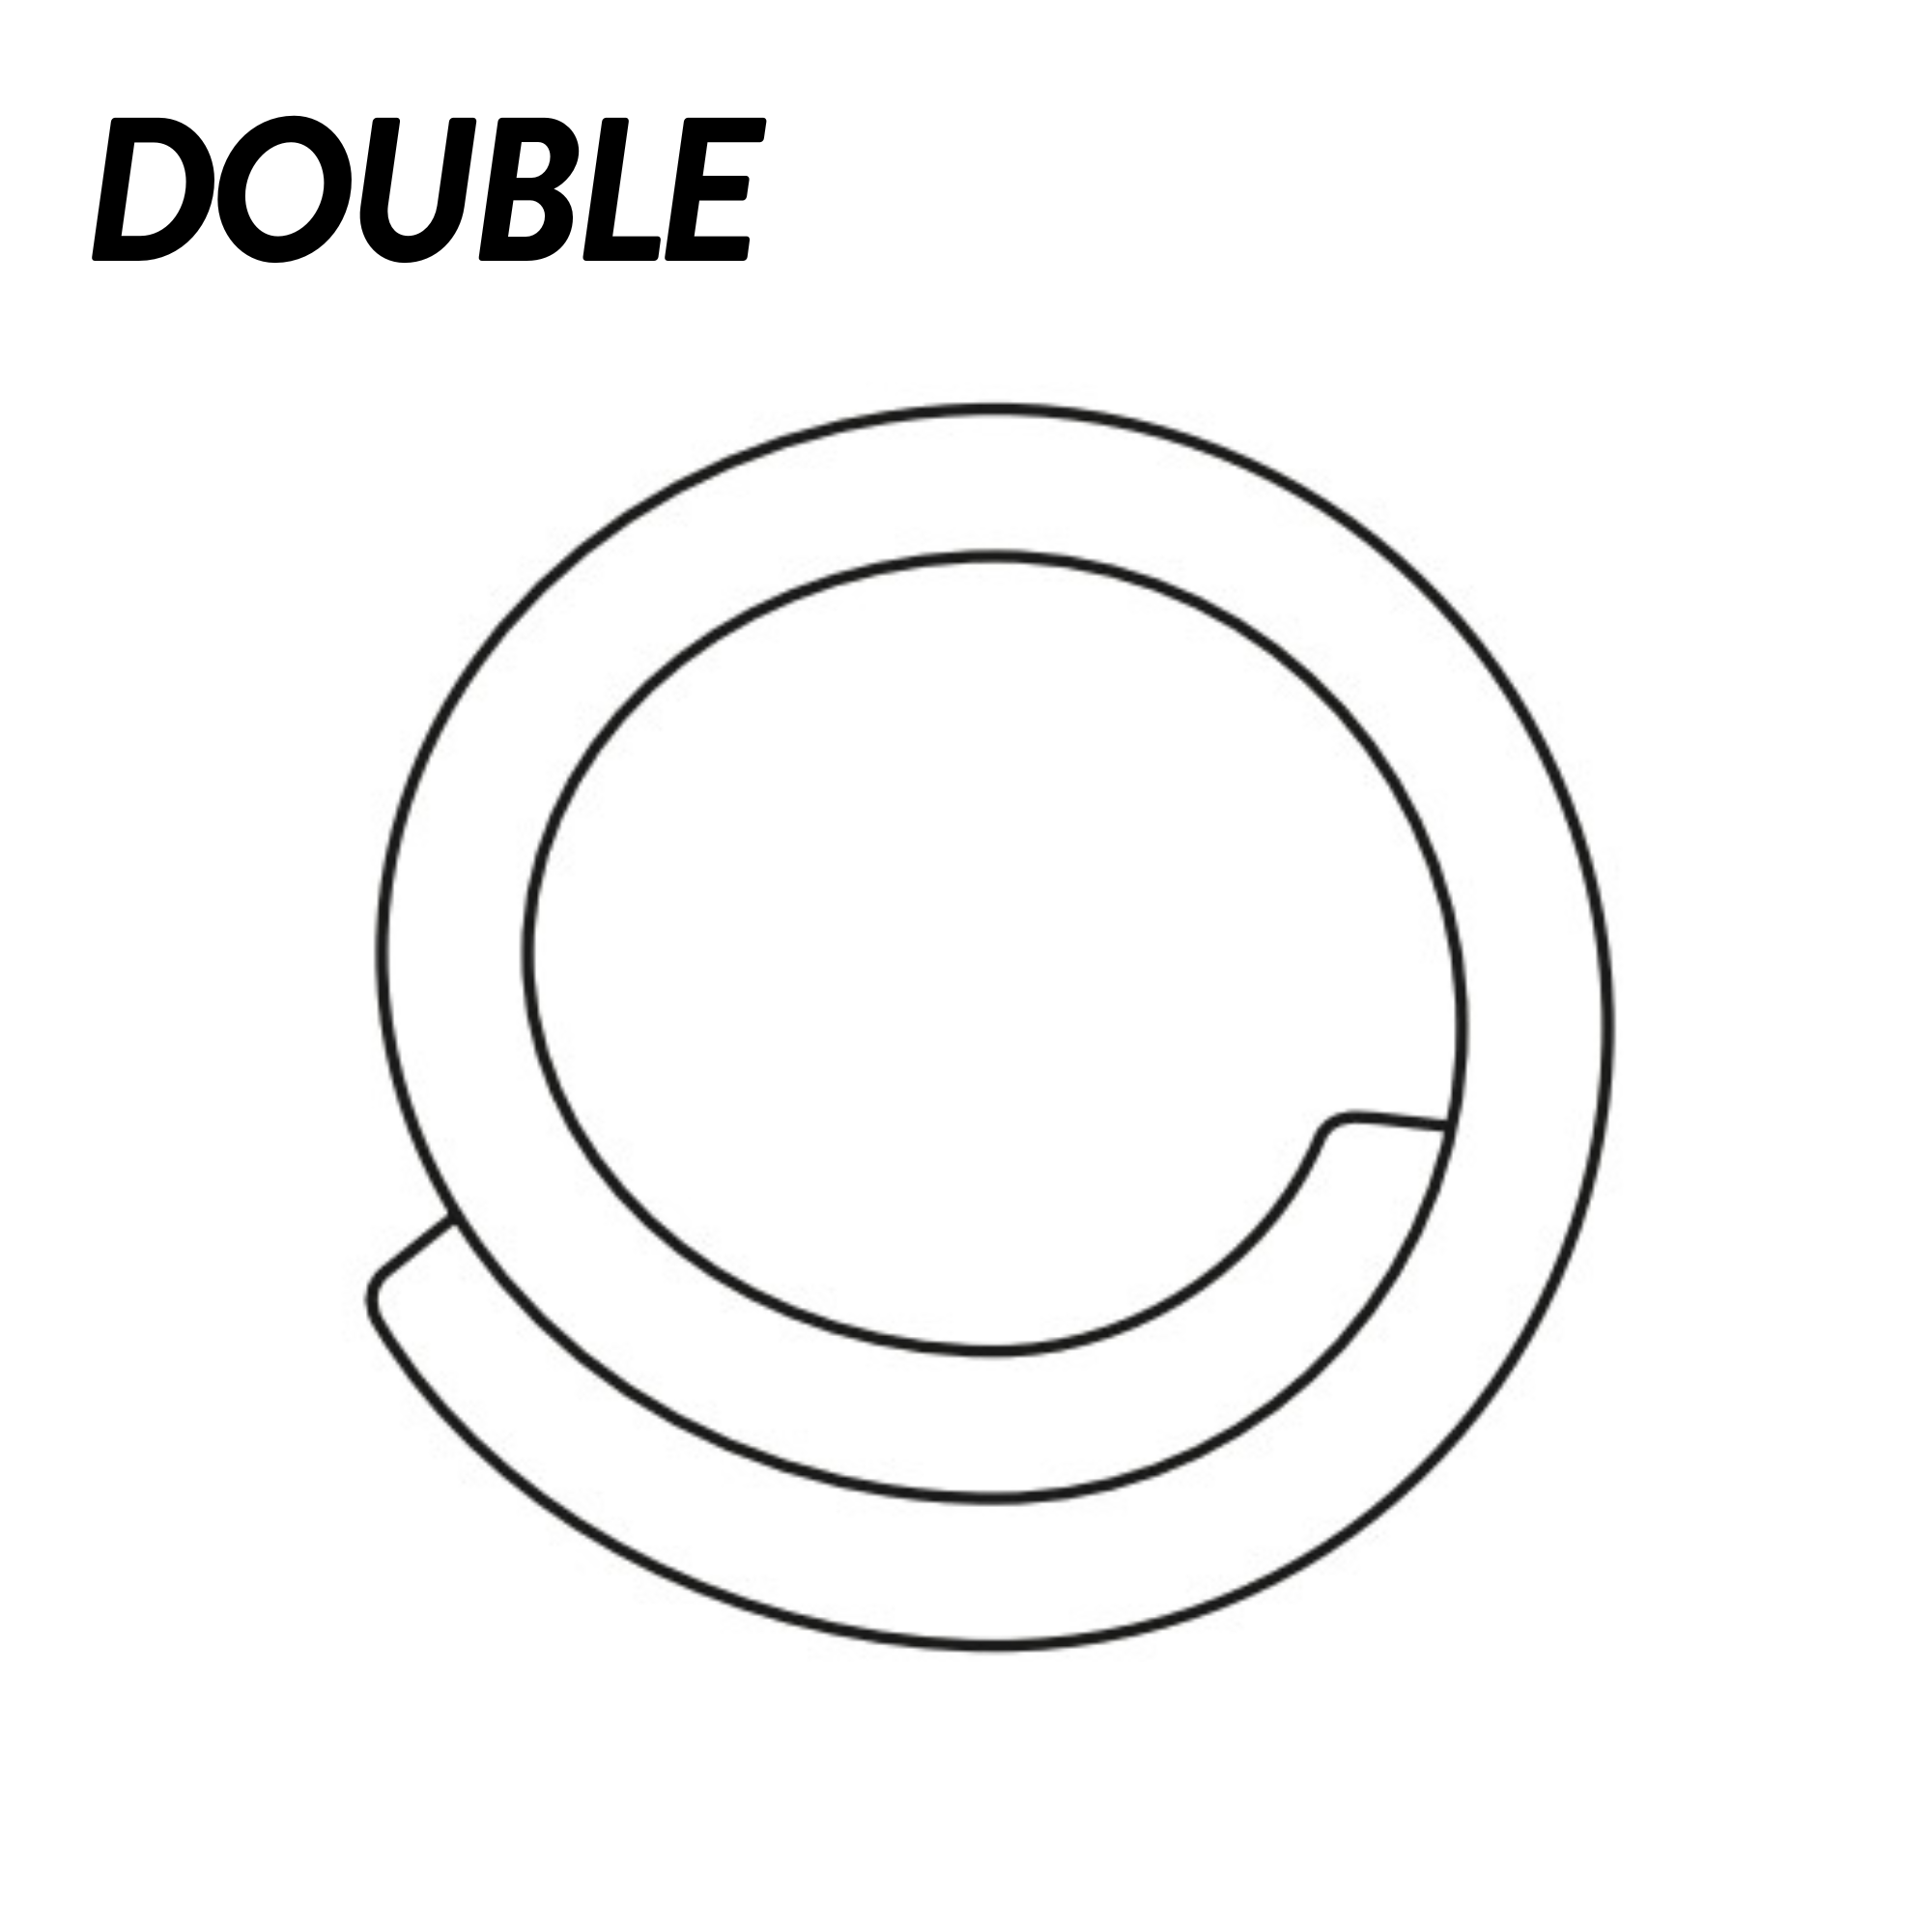 Hapla Bandage Tubulaire - 4 diamètres - Simple ou double - 4 ou 8 pièces - Essential